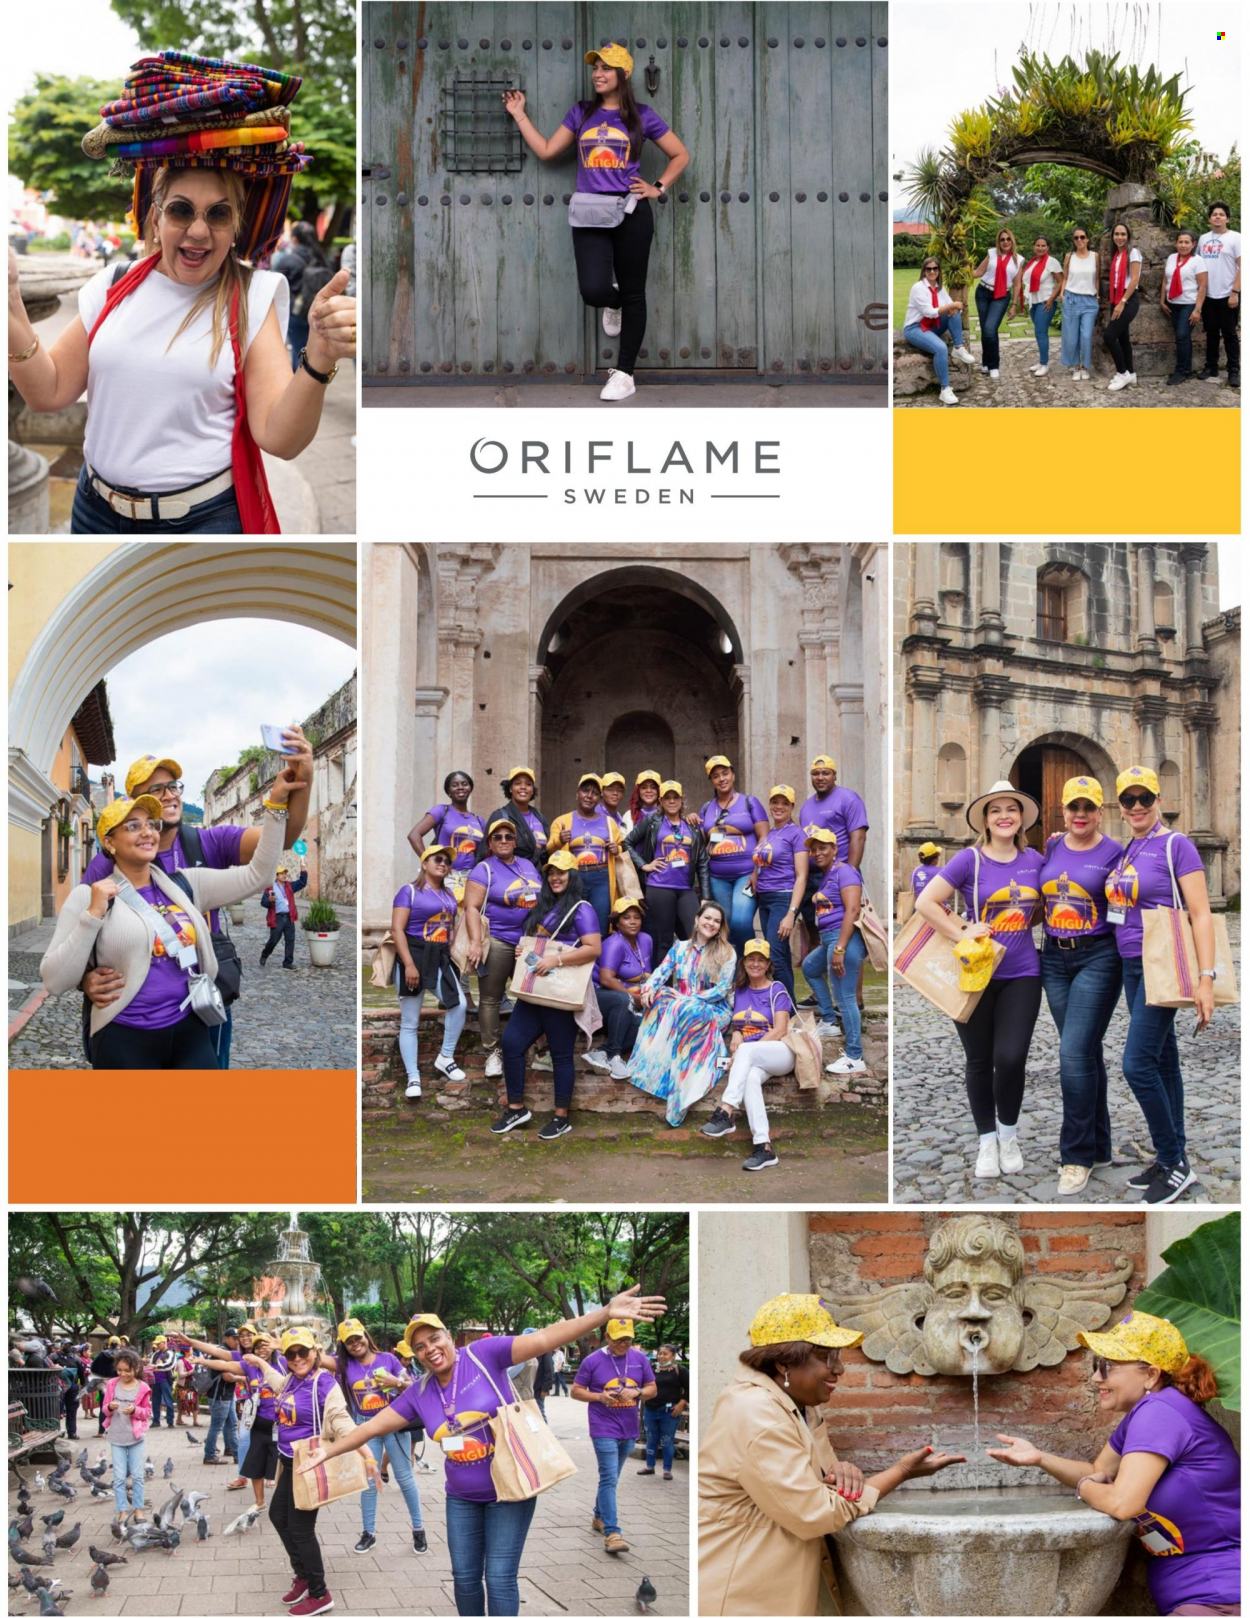 Catálogo Oriflame - 1.10.2022 - 31.10.2022.